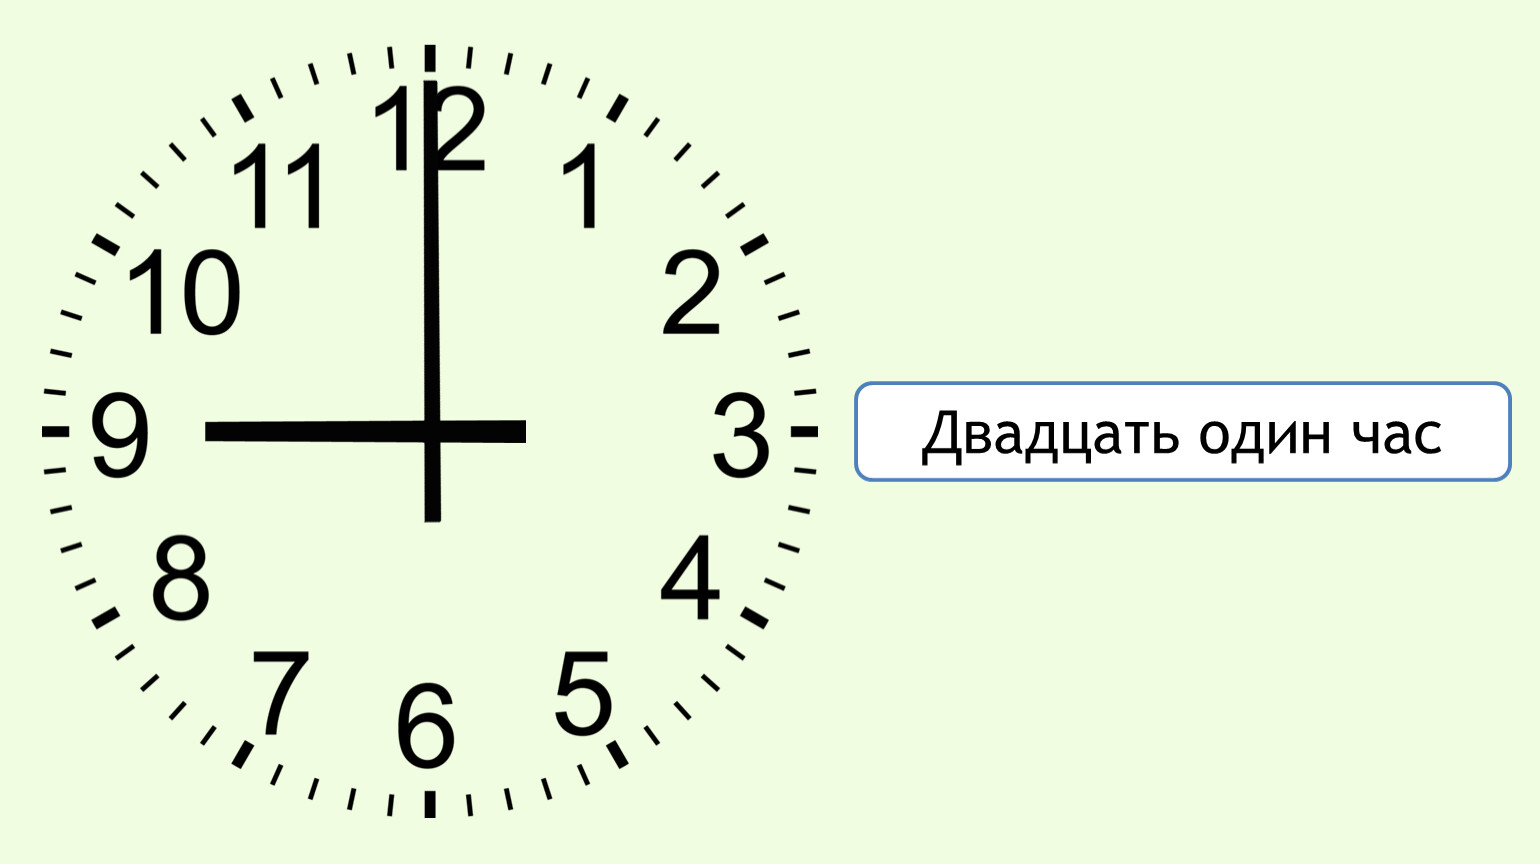 9 часов 21 минута. Часы показывают час. Время циферблат. Циферблат 9 часов. Циферблат часов с минутами.